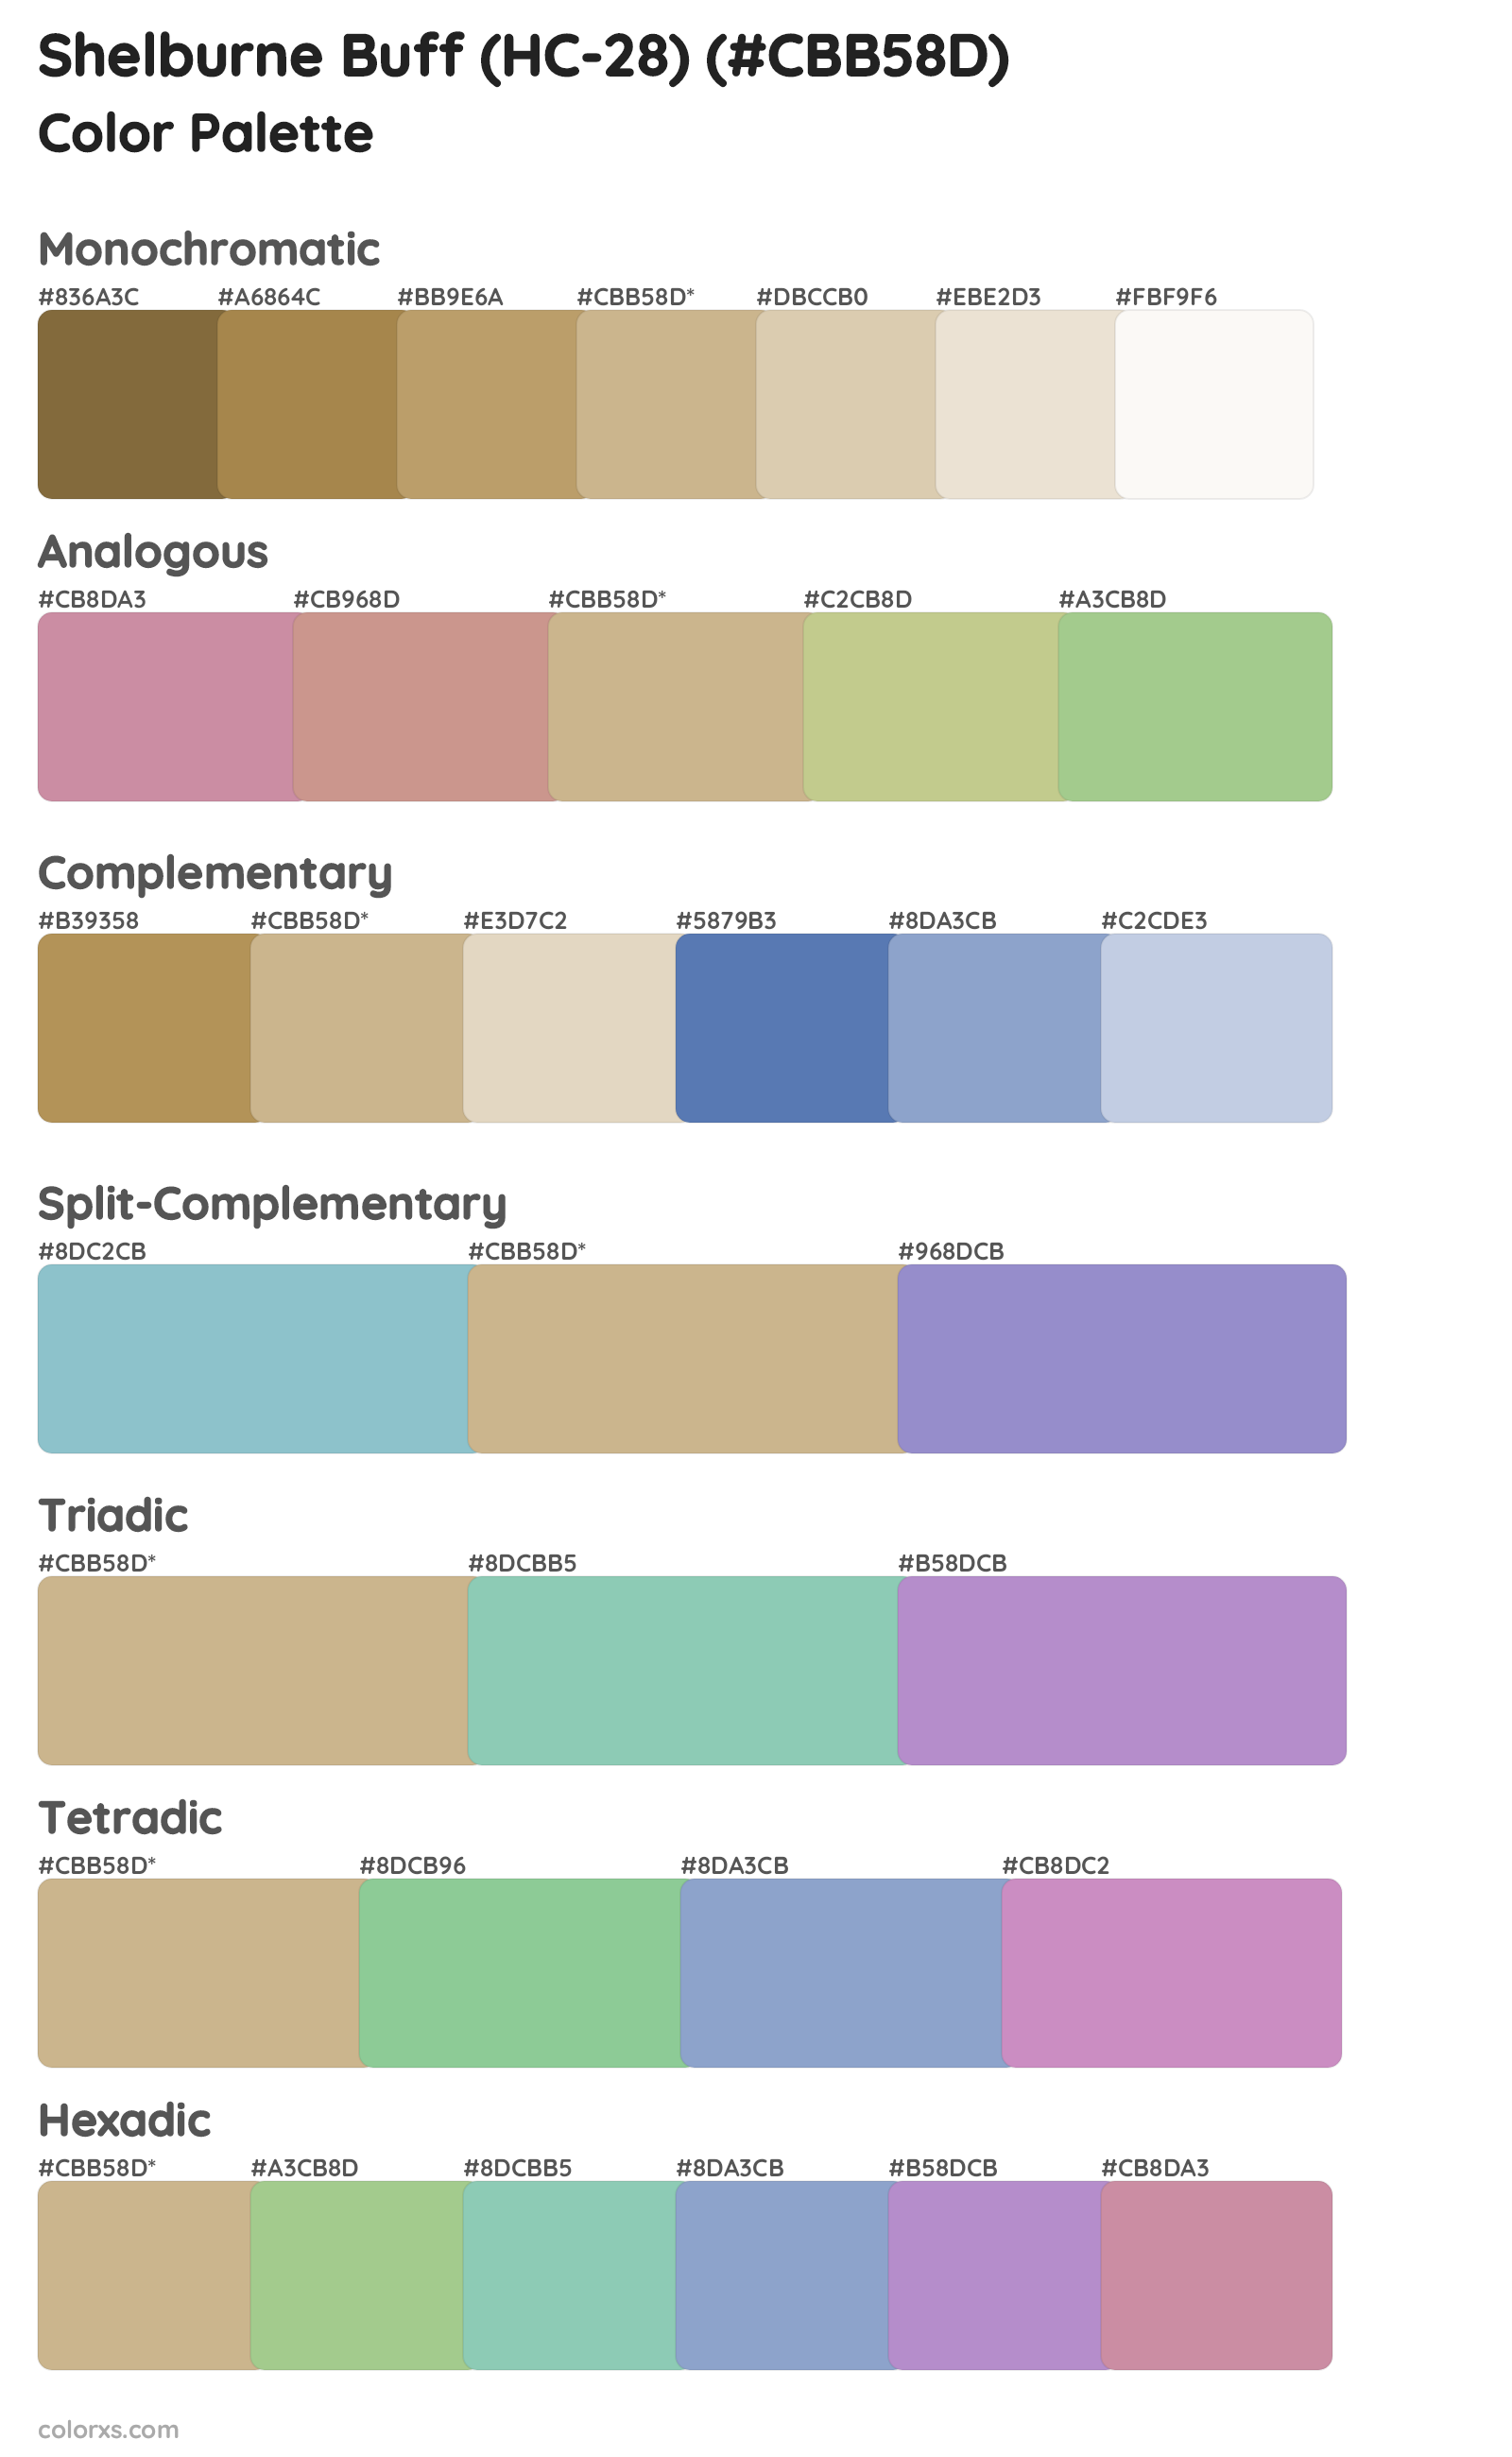 Shelburne Buff (HC-28) Color Scheme Palettes